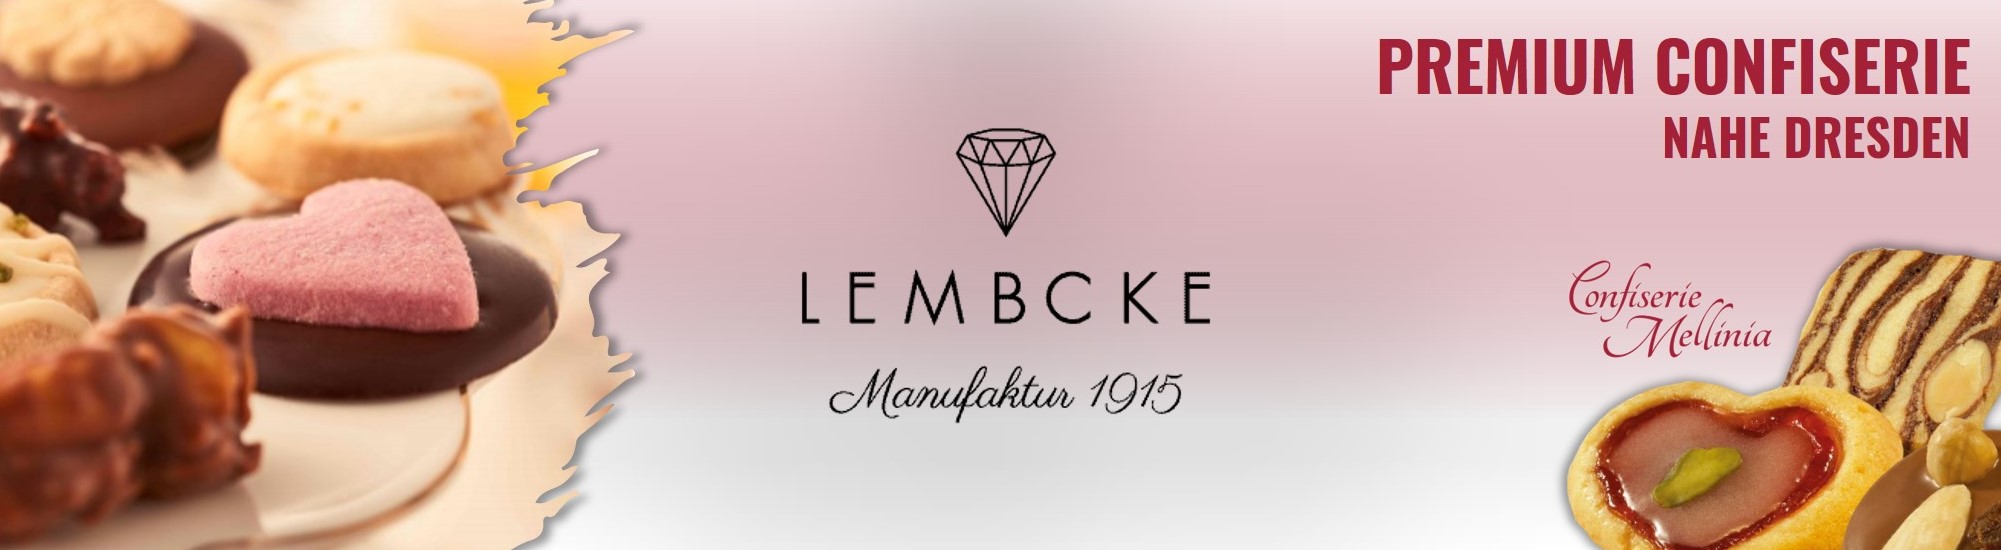 Confiserie Lembcke im Dresden Onlineshop entdecken